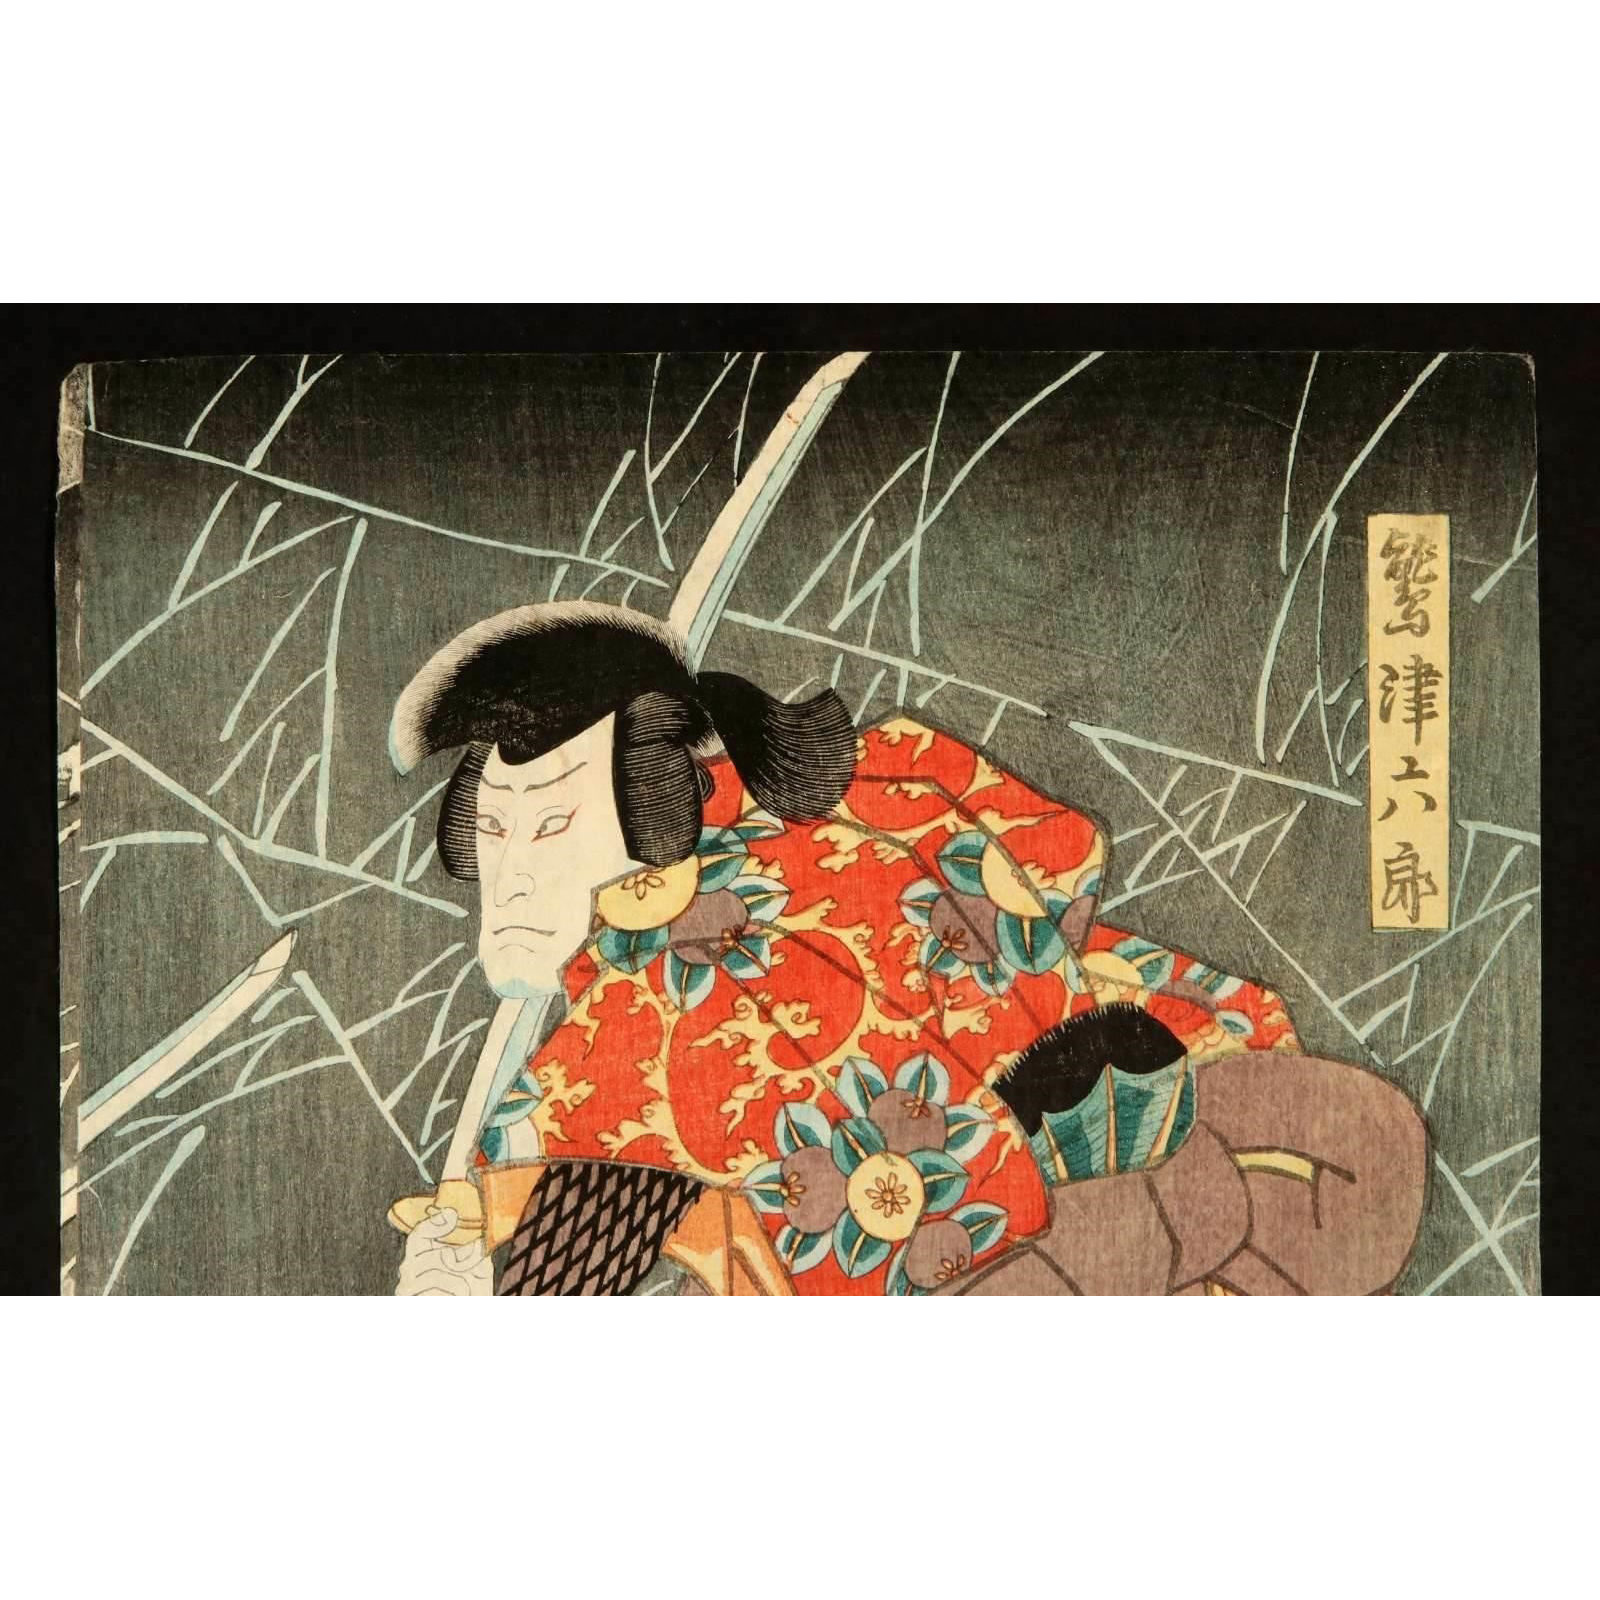 AW10-001: KUNISADA UTAGAWA WOODBLOCK 'ACTORS' TRIPTYCH